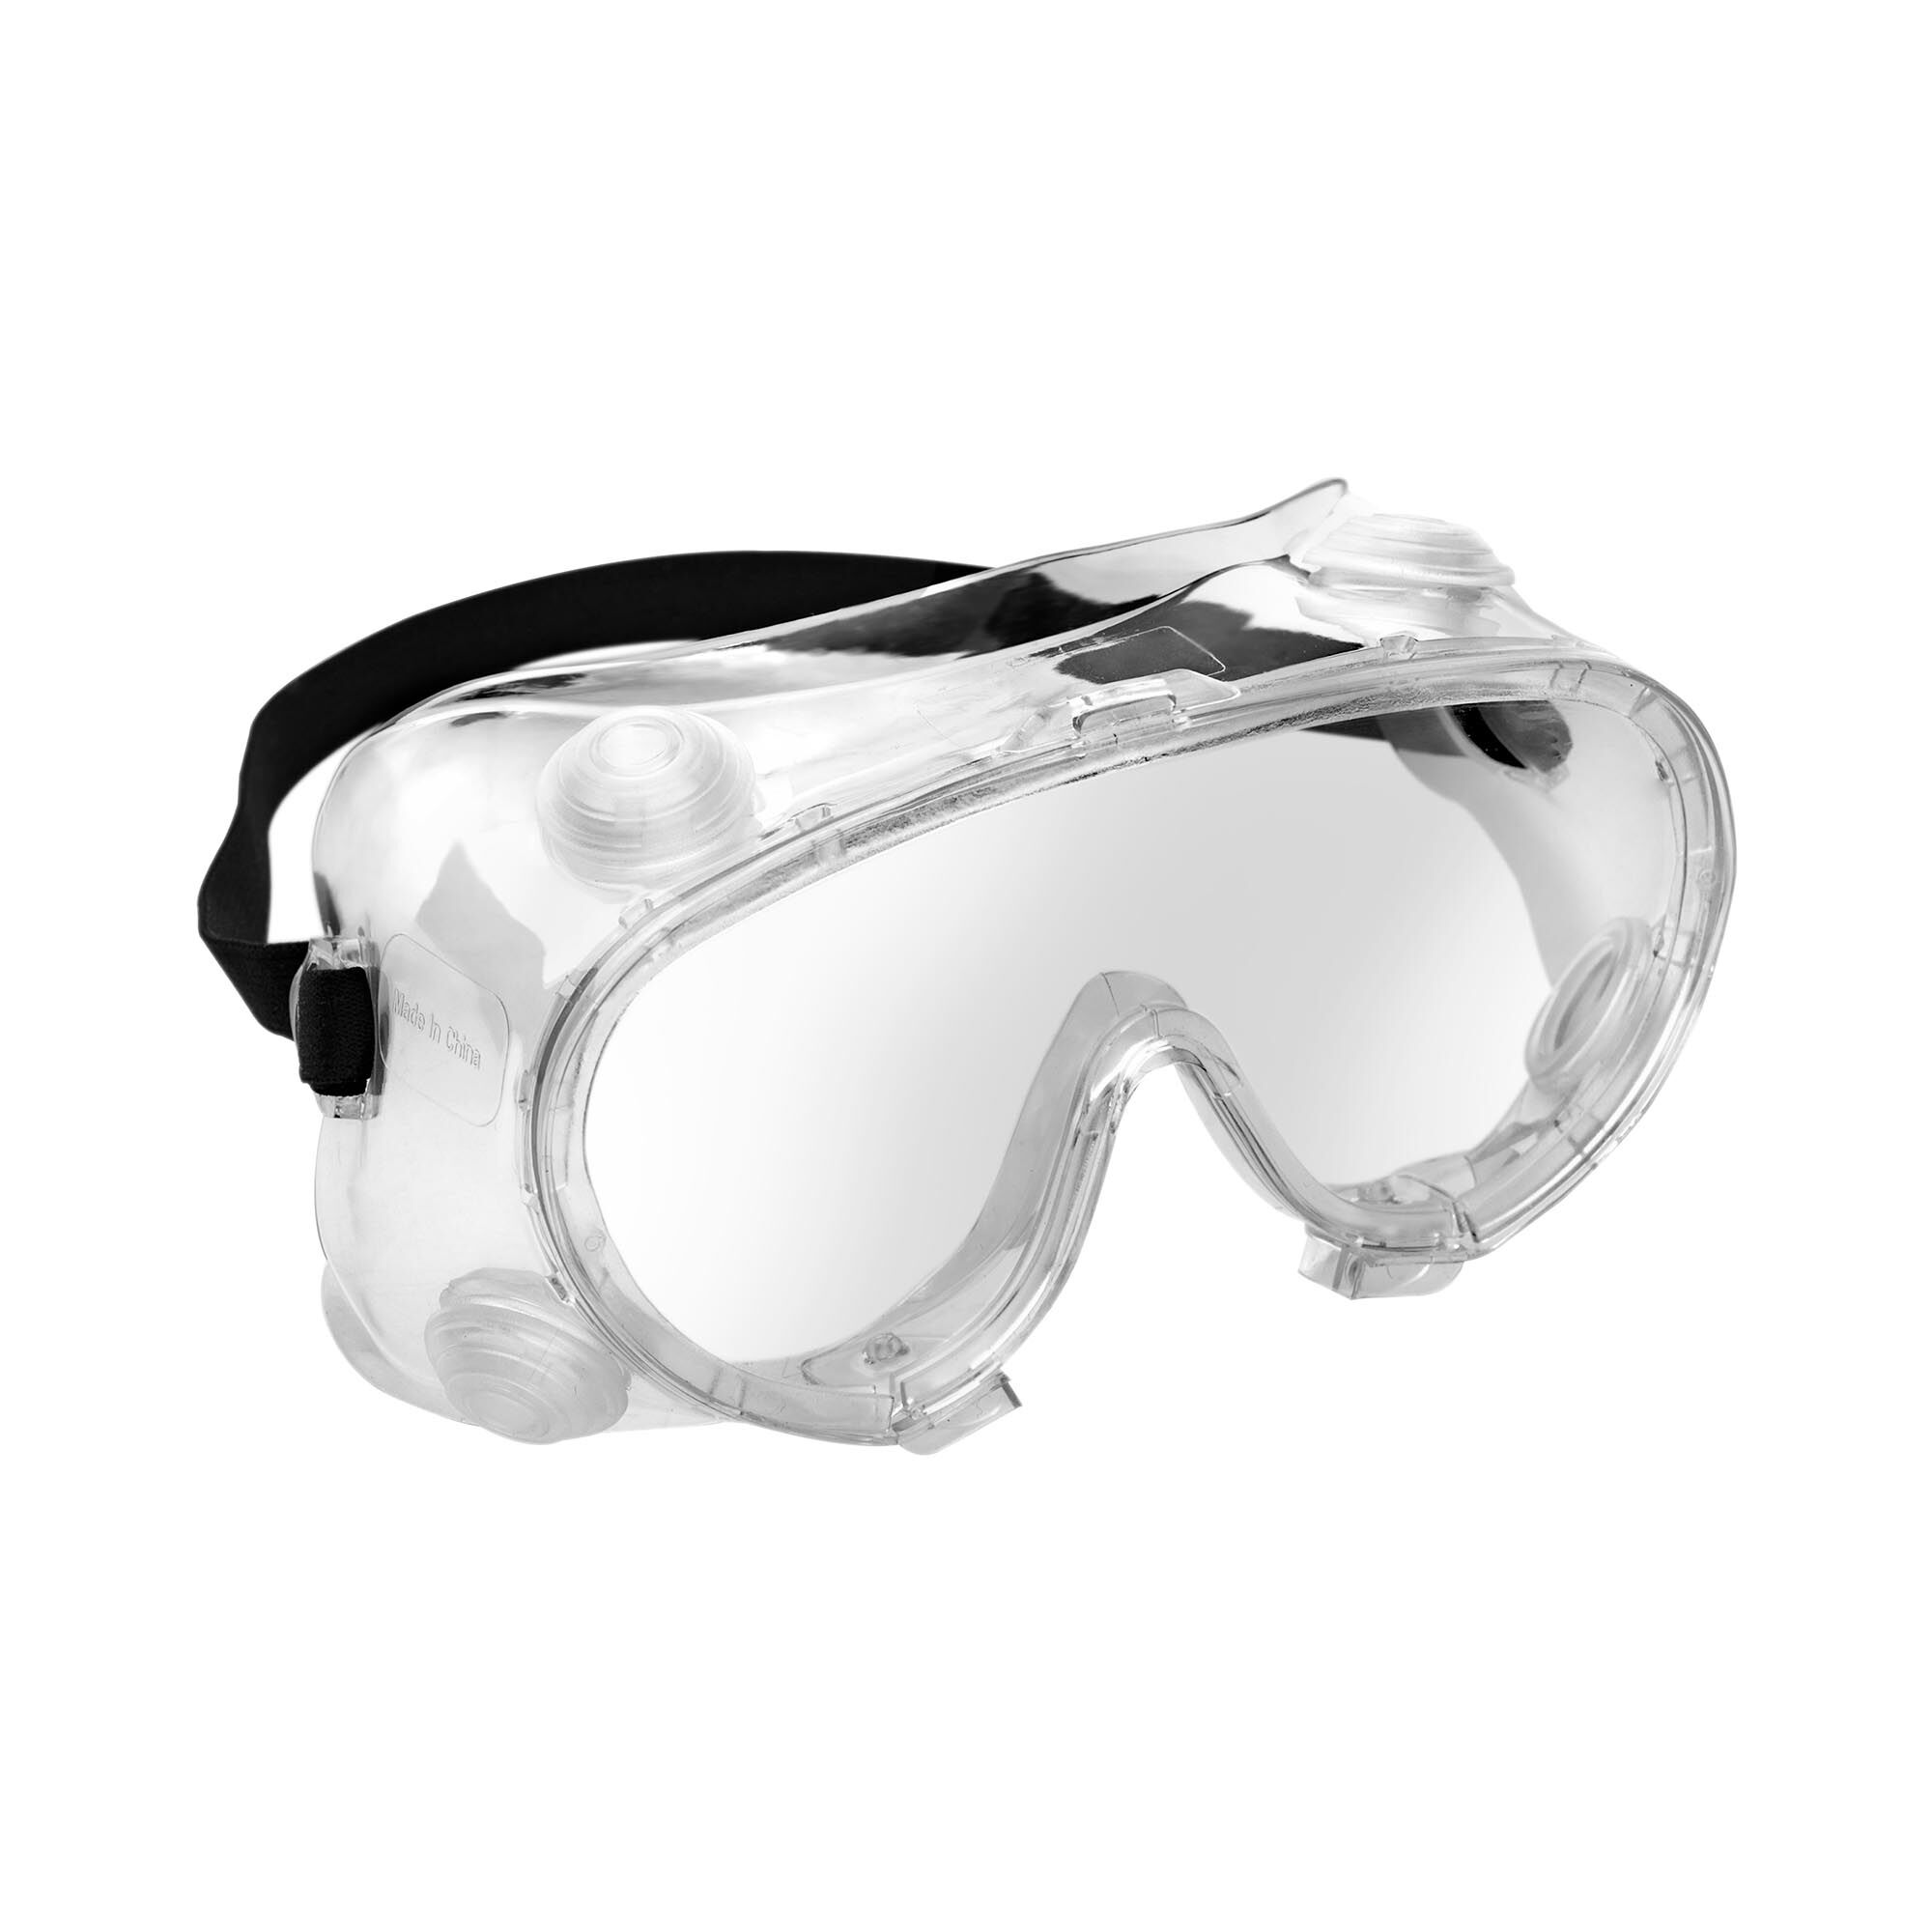 MSW Schutzbrille - 10er Set - klar - Einheitsgröße 10061342